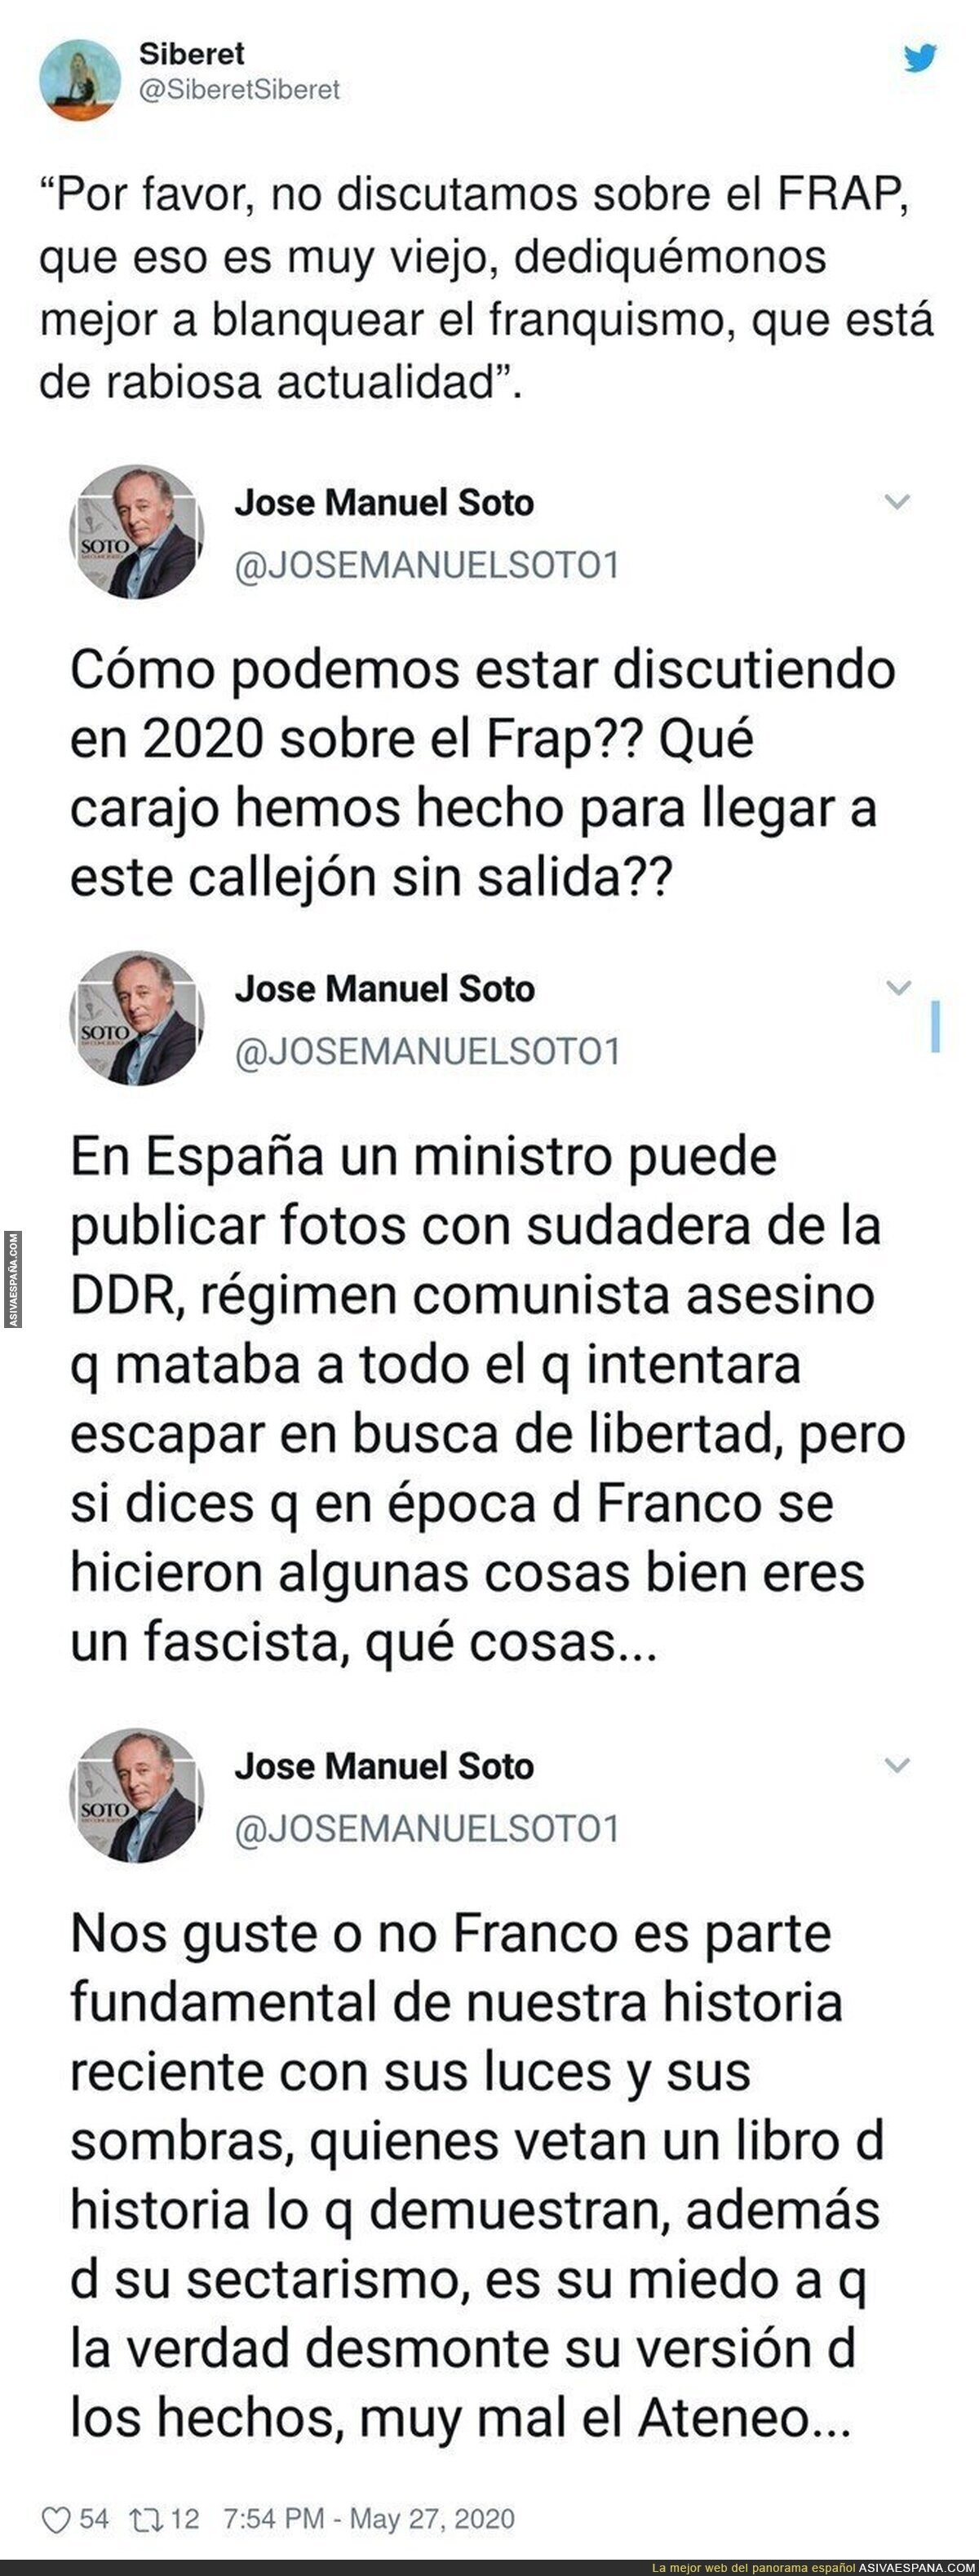 José Manuel Soto dejando claro su posición sobre el franquismo con estos tuits que le dejan totalmente retratado